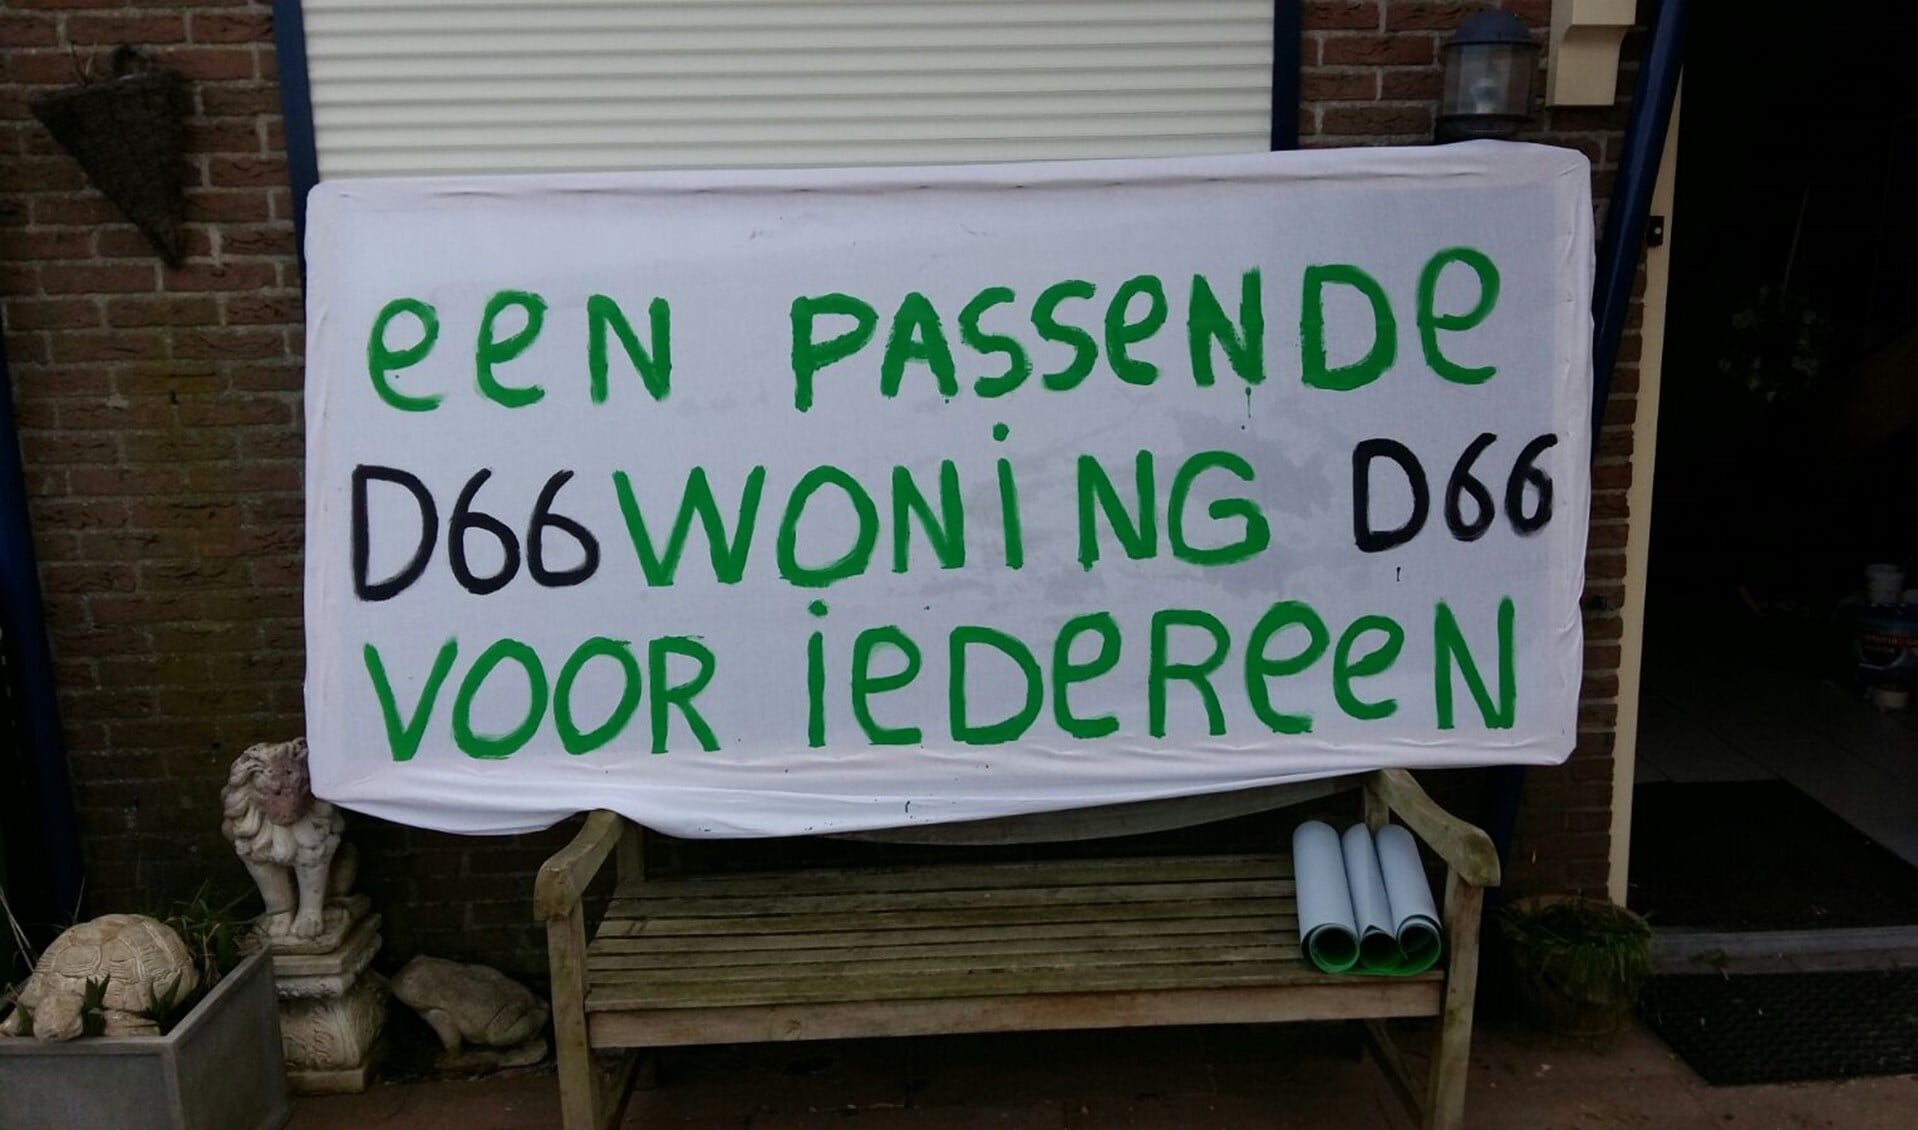 De boodschap is duidelijk: D66 wil een passende woning voor iedereen